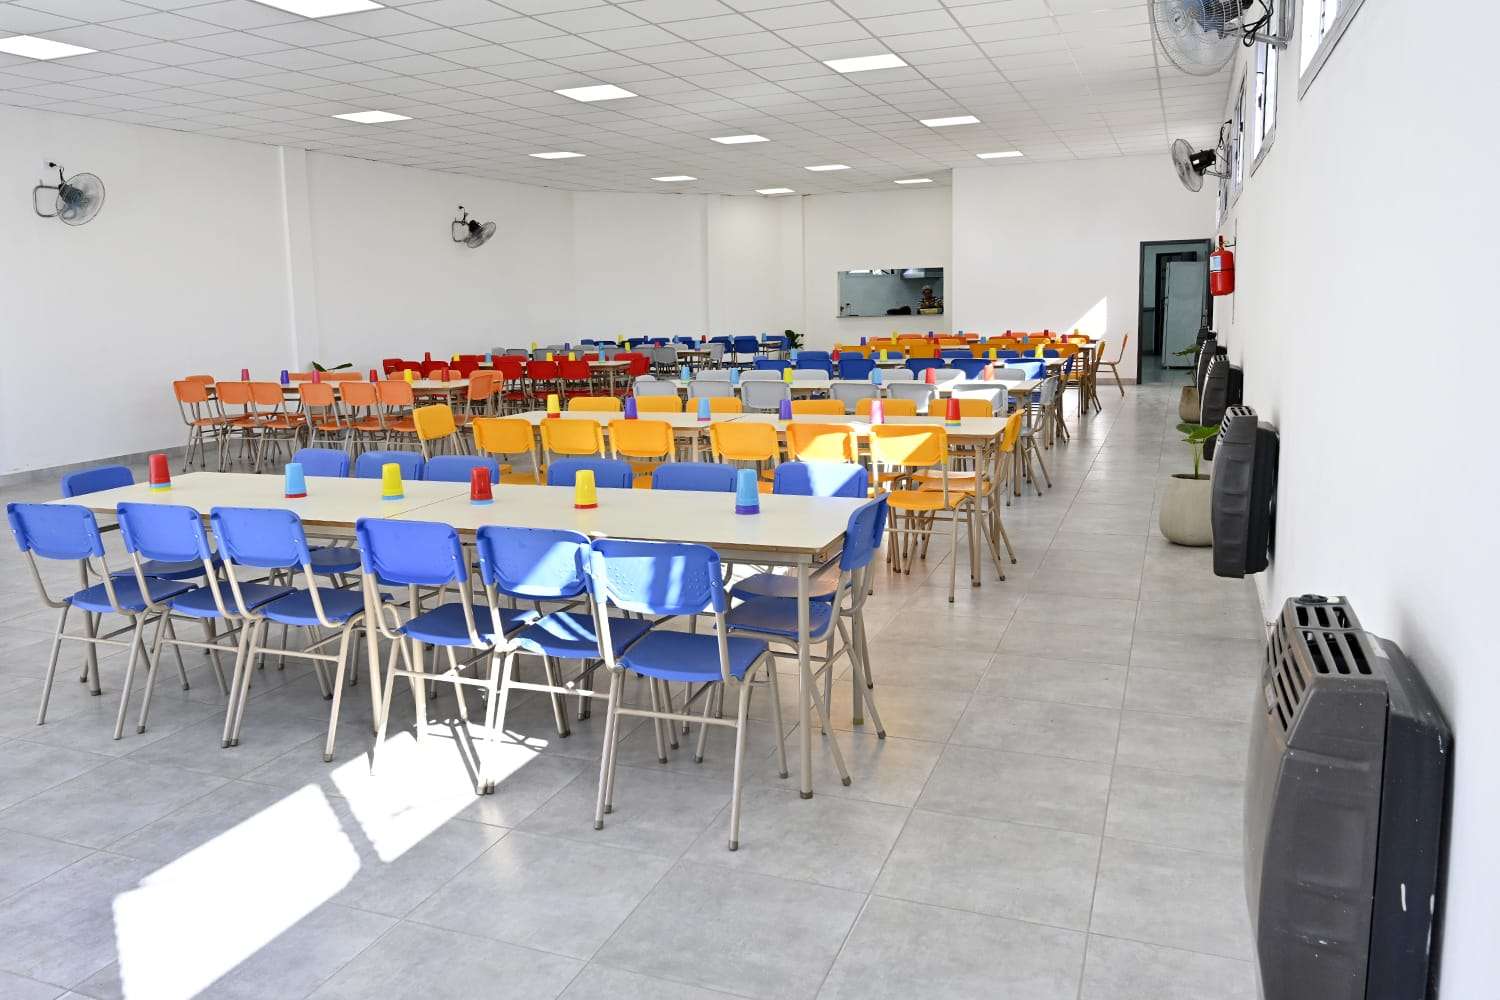 Inauguran comedor en Escuela de Tigre: “La educación es el motor del desarrollo”, dijo Zamora